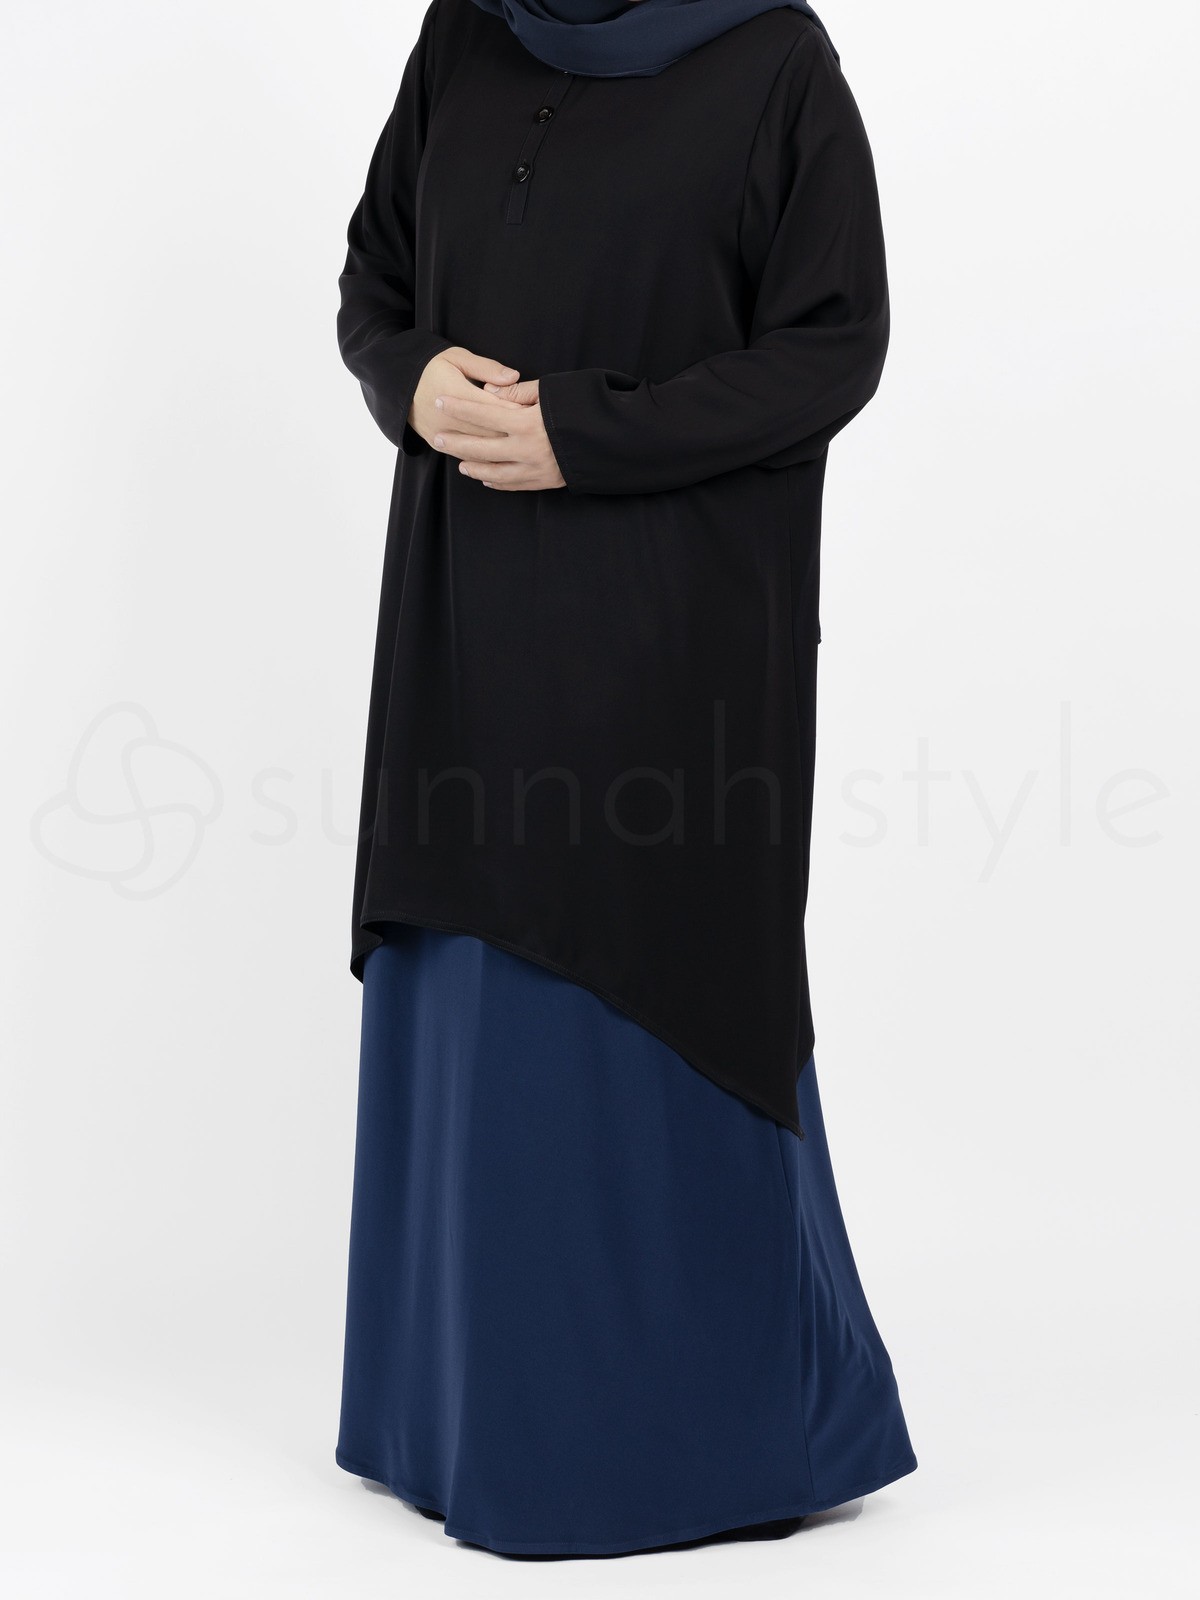 Sunnah Style - Avant Abaya Top (Black)